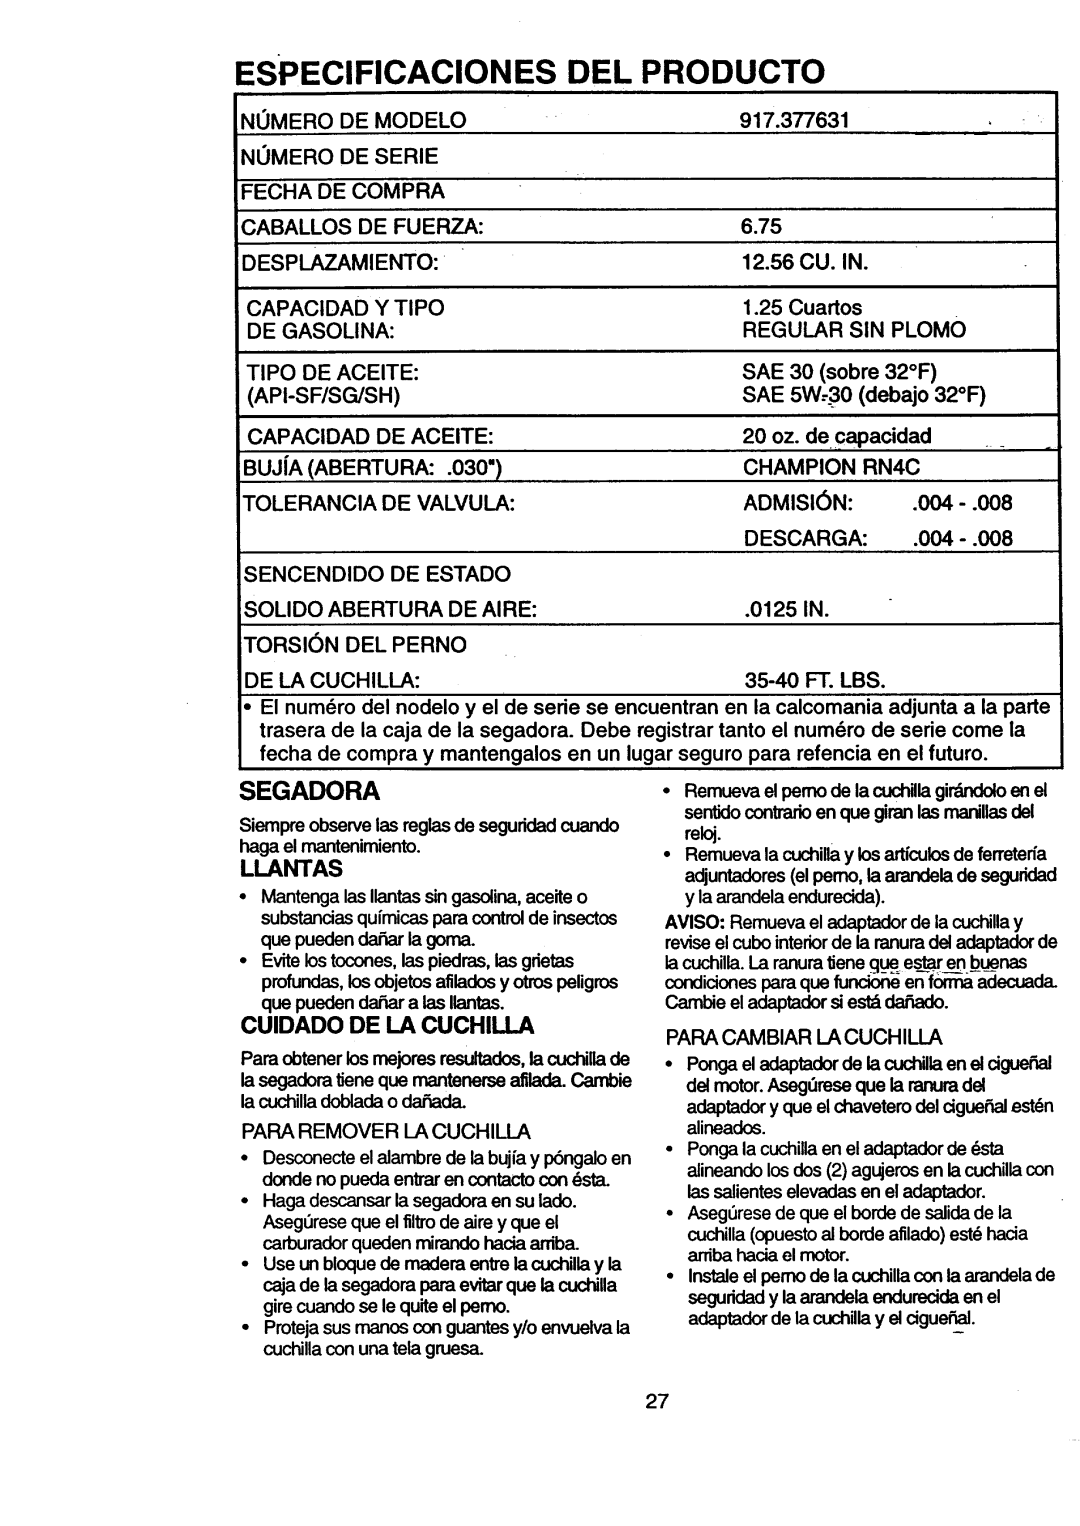 Craftsman 917.377631 owner manual Especificaciones, Del Producto, Segadora, Llantas, Cuidado De La Cuchilla 